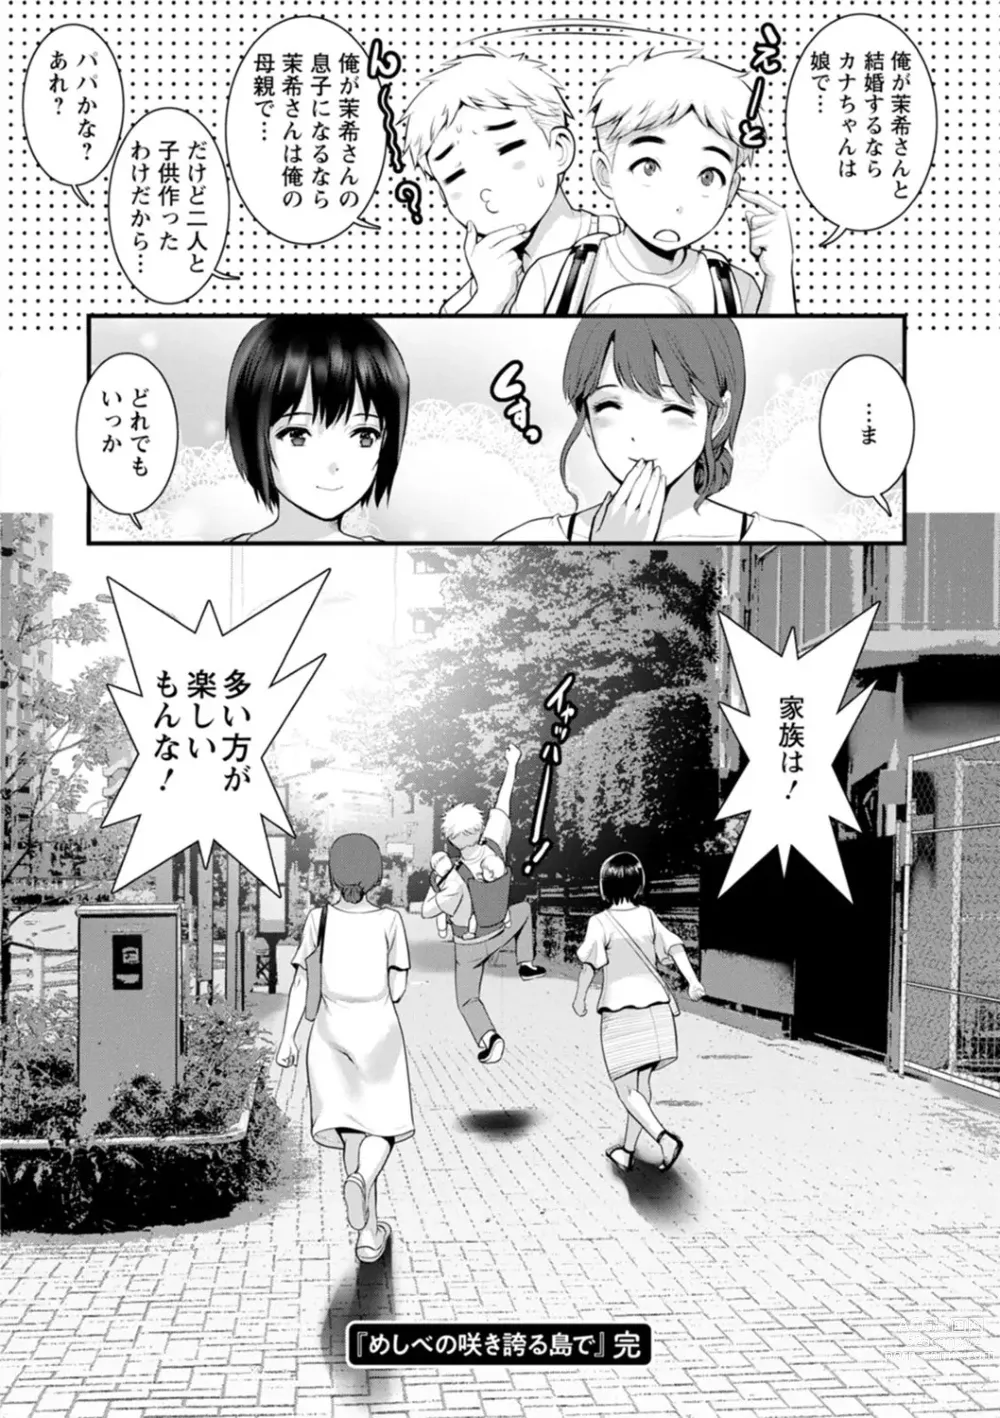 Page 182 of manga Meshibe no Nomikomi yuku Hate ni Meshibe no Sakihokoru Shima de 2